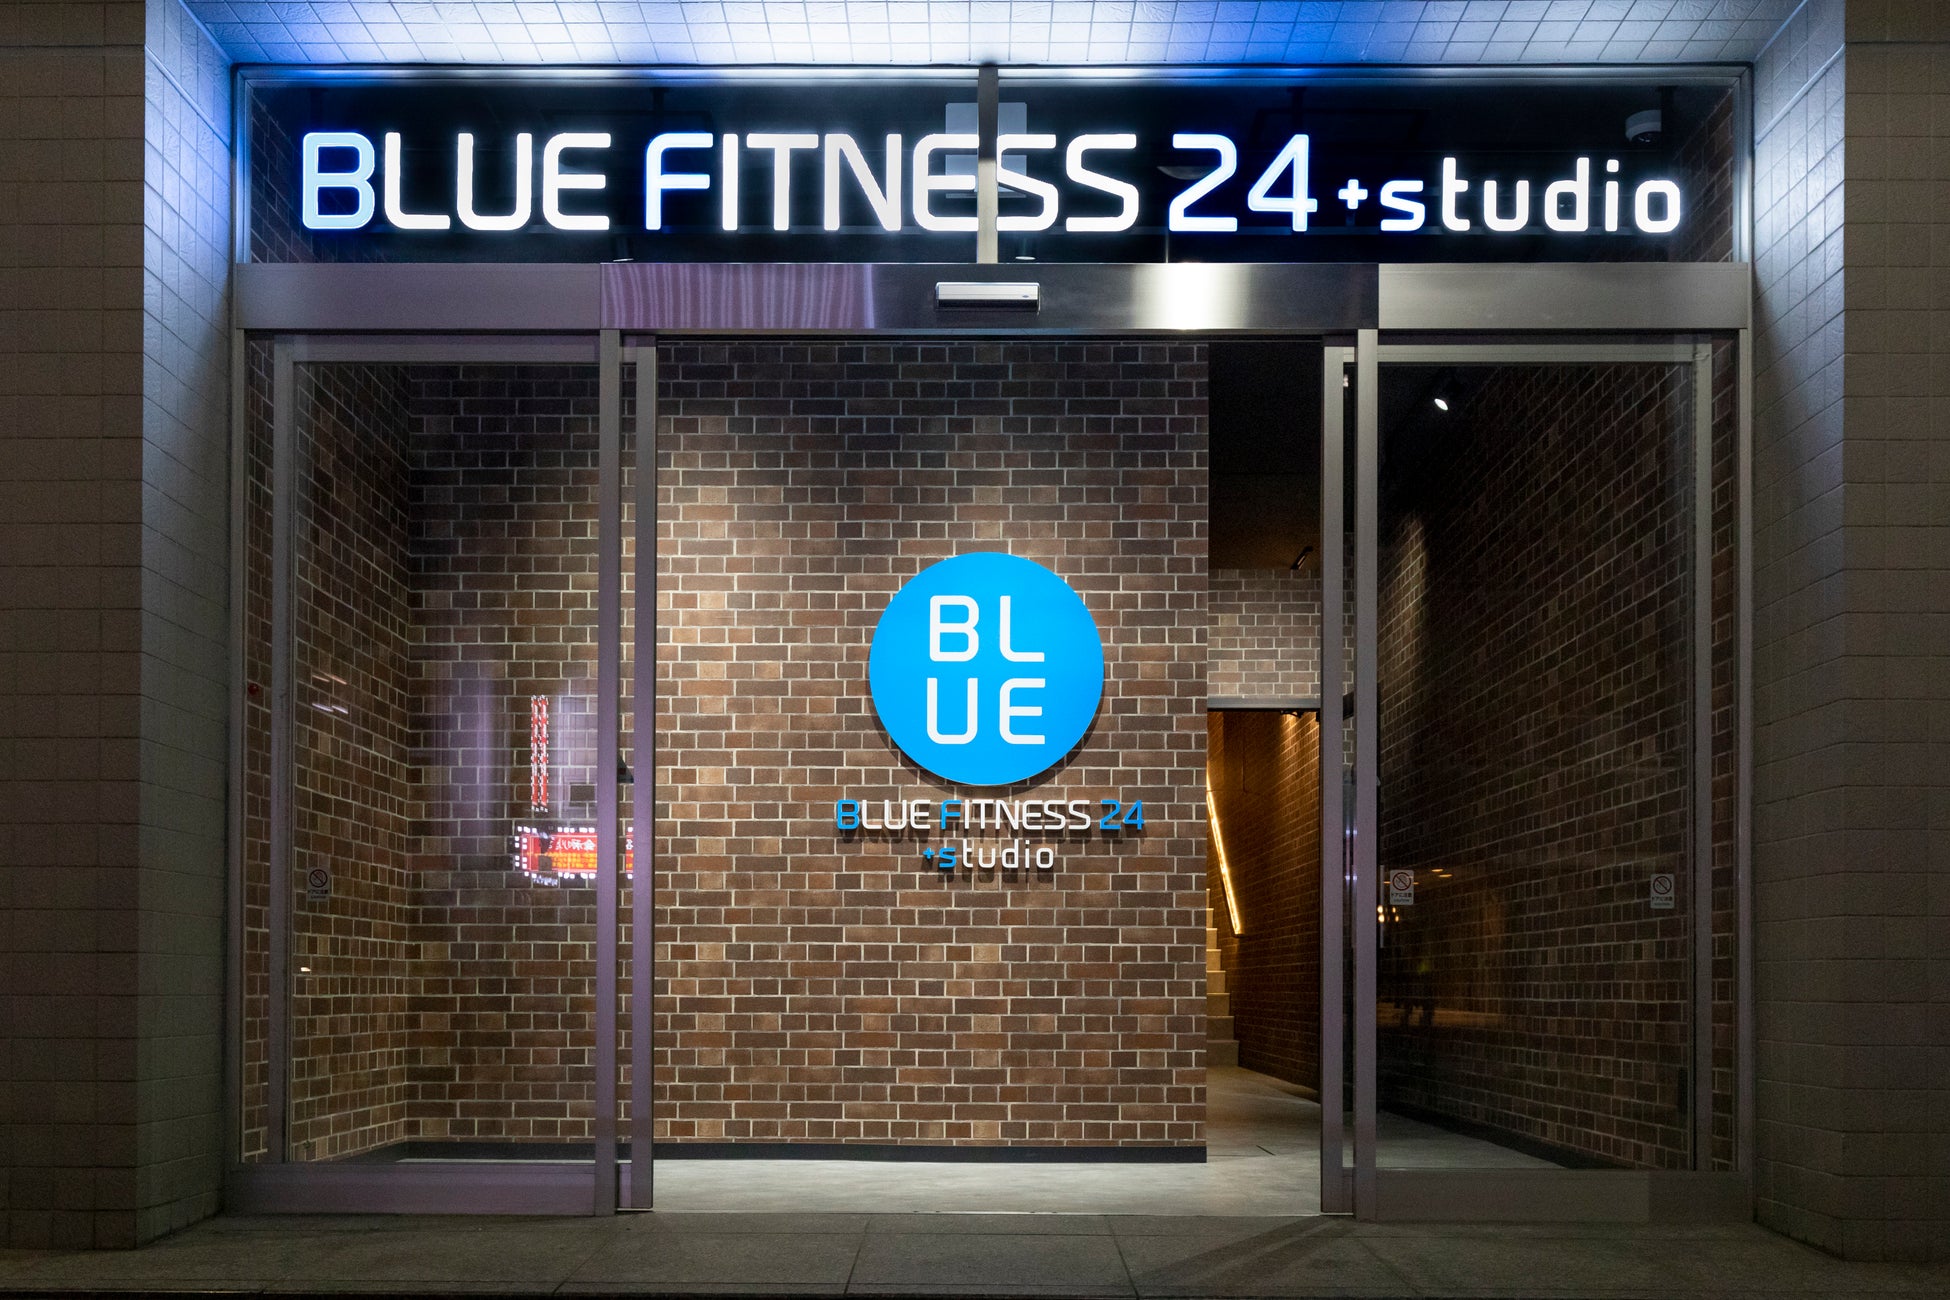 24時間ジムとパーソナルジムが融合した次世代型ハイブリッドジム「BLUE FITNESS24」がスタジオを併設した新ブランド「BLUE FITNESS24+studio」の2号店を稲毛海岸に出店